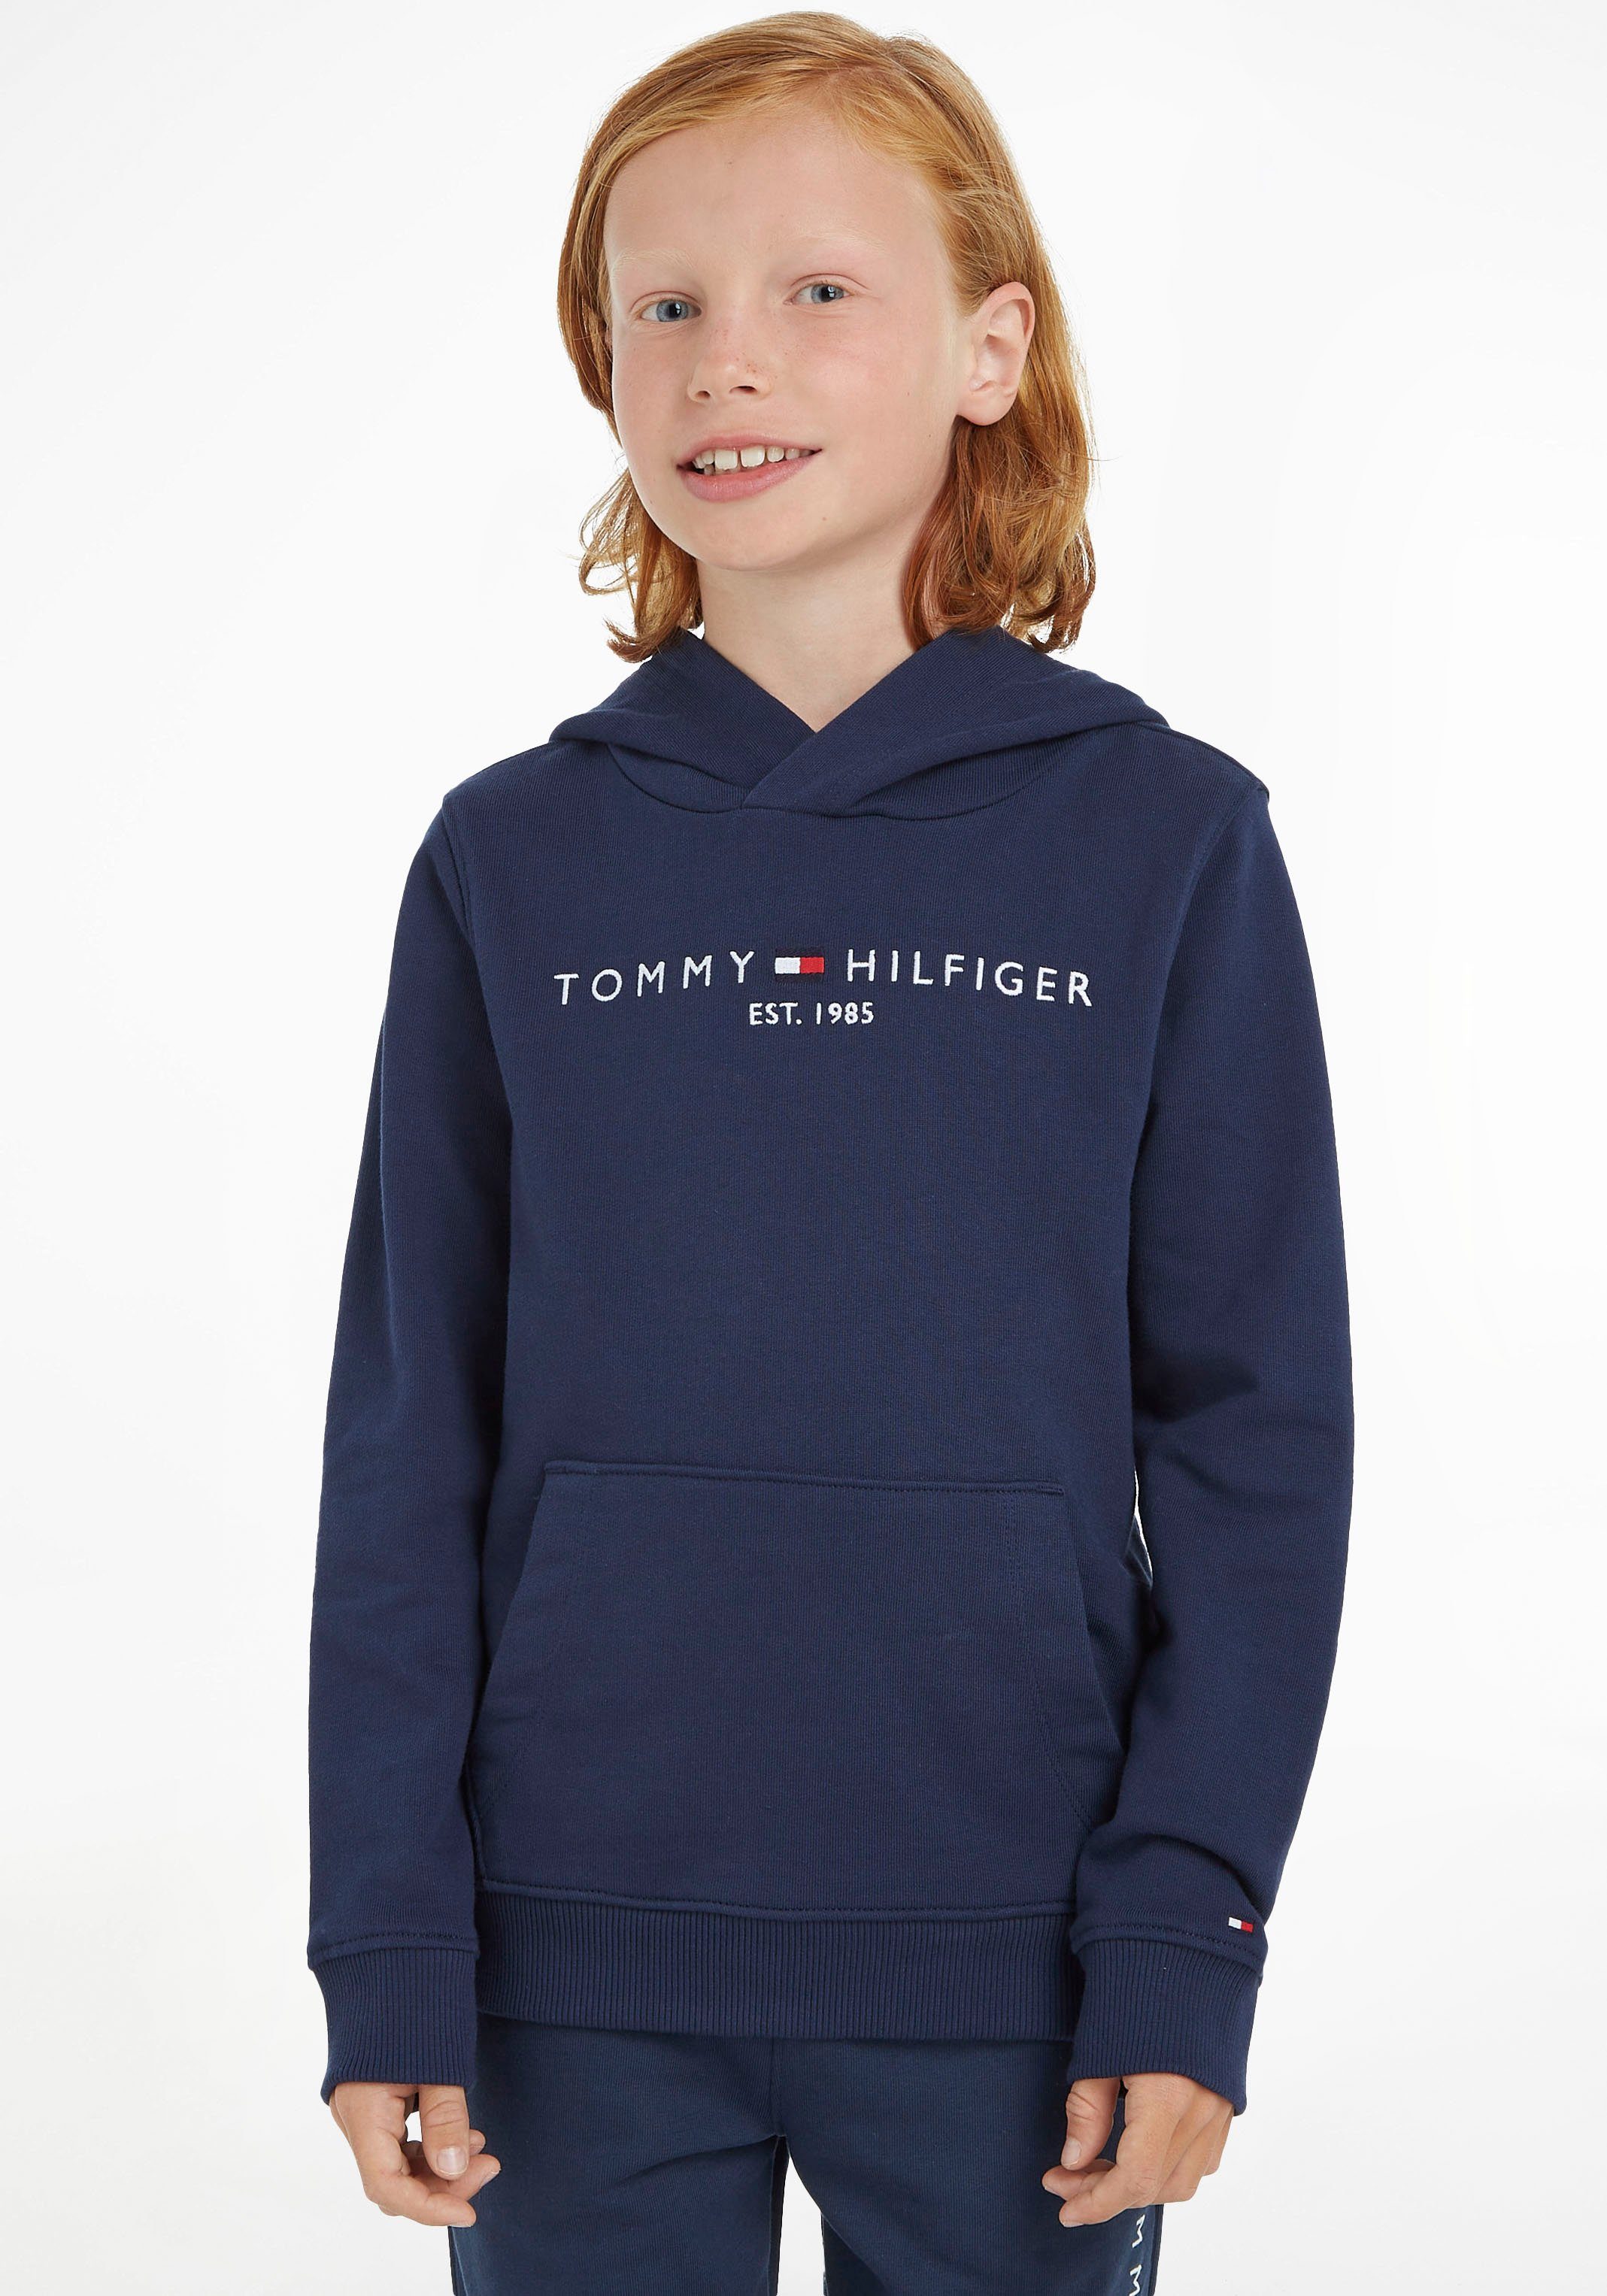 Jungen und MiniMe,für ESSENTIAL Junior Kapuzensweatshirt Mädchen Hilfiger Tommy Kinder HOODIE Kids